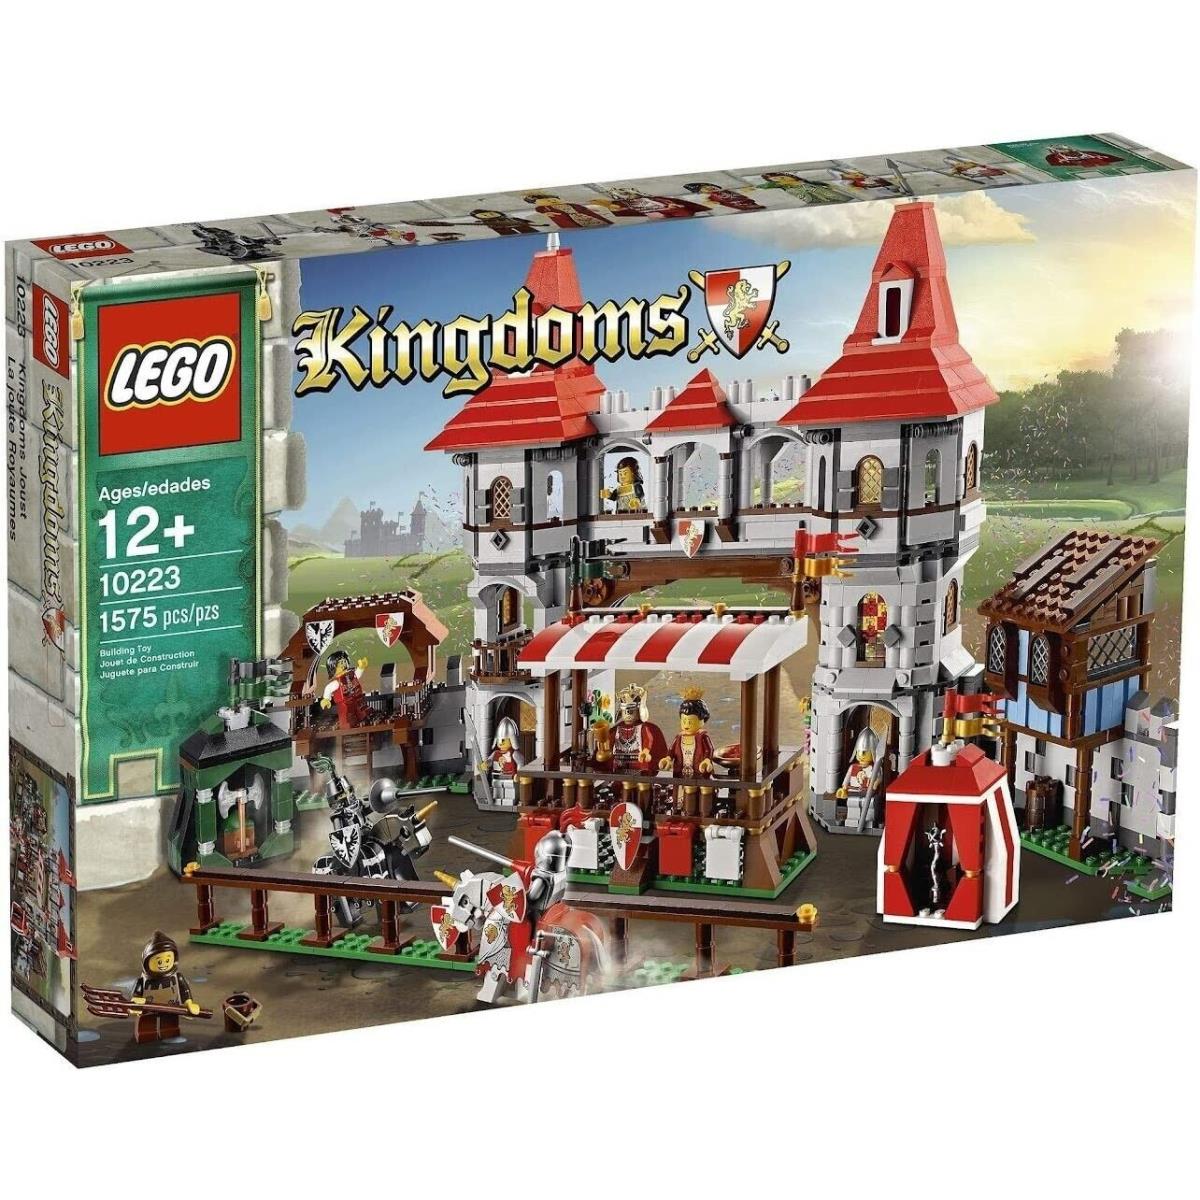 Lego Castle: Kingdoms Joust 10223 Retired Hard to Find Building Set